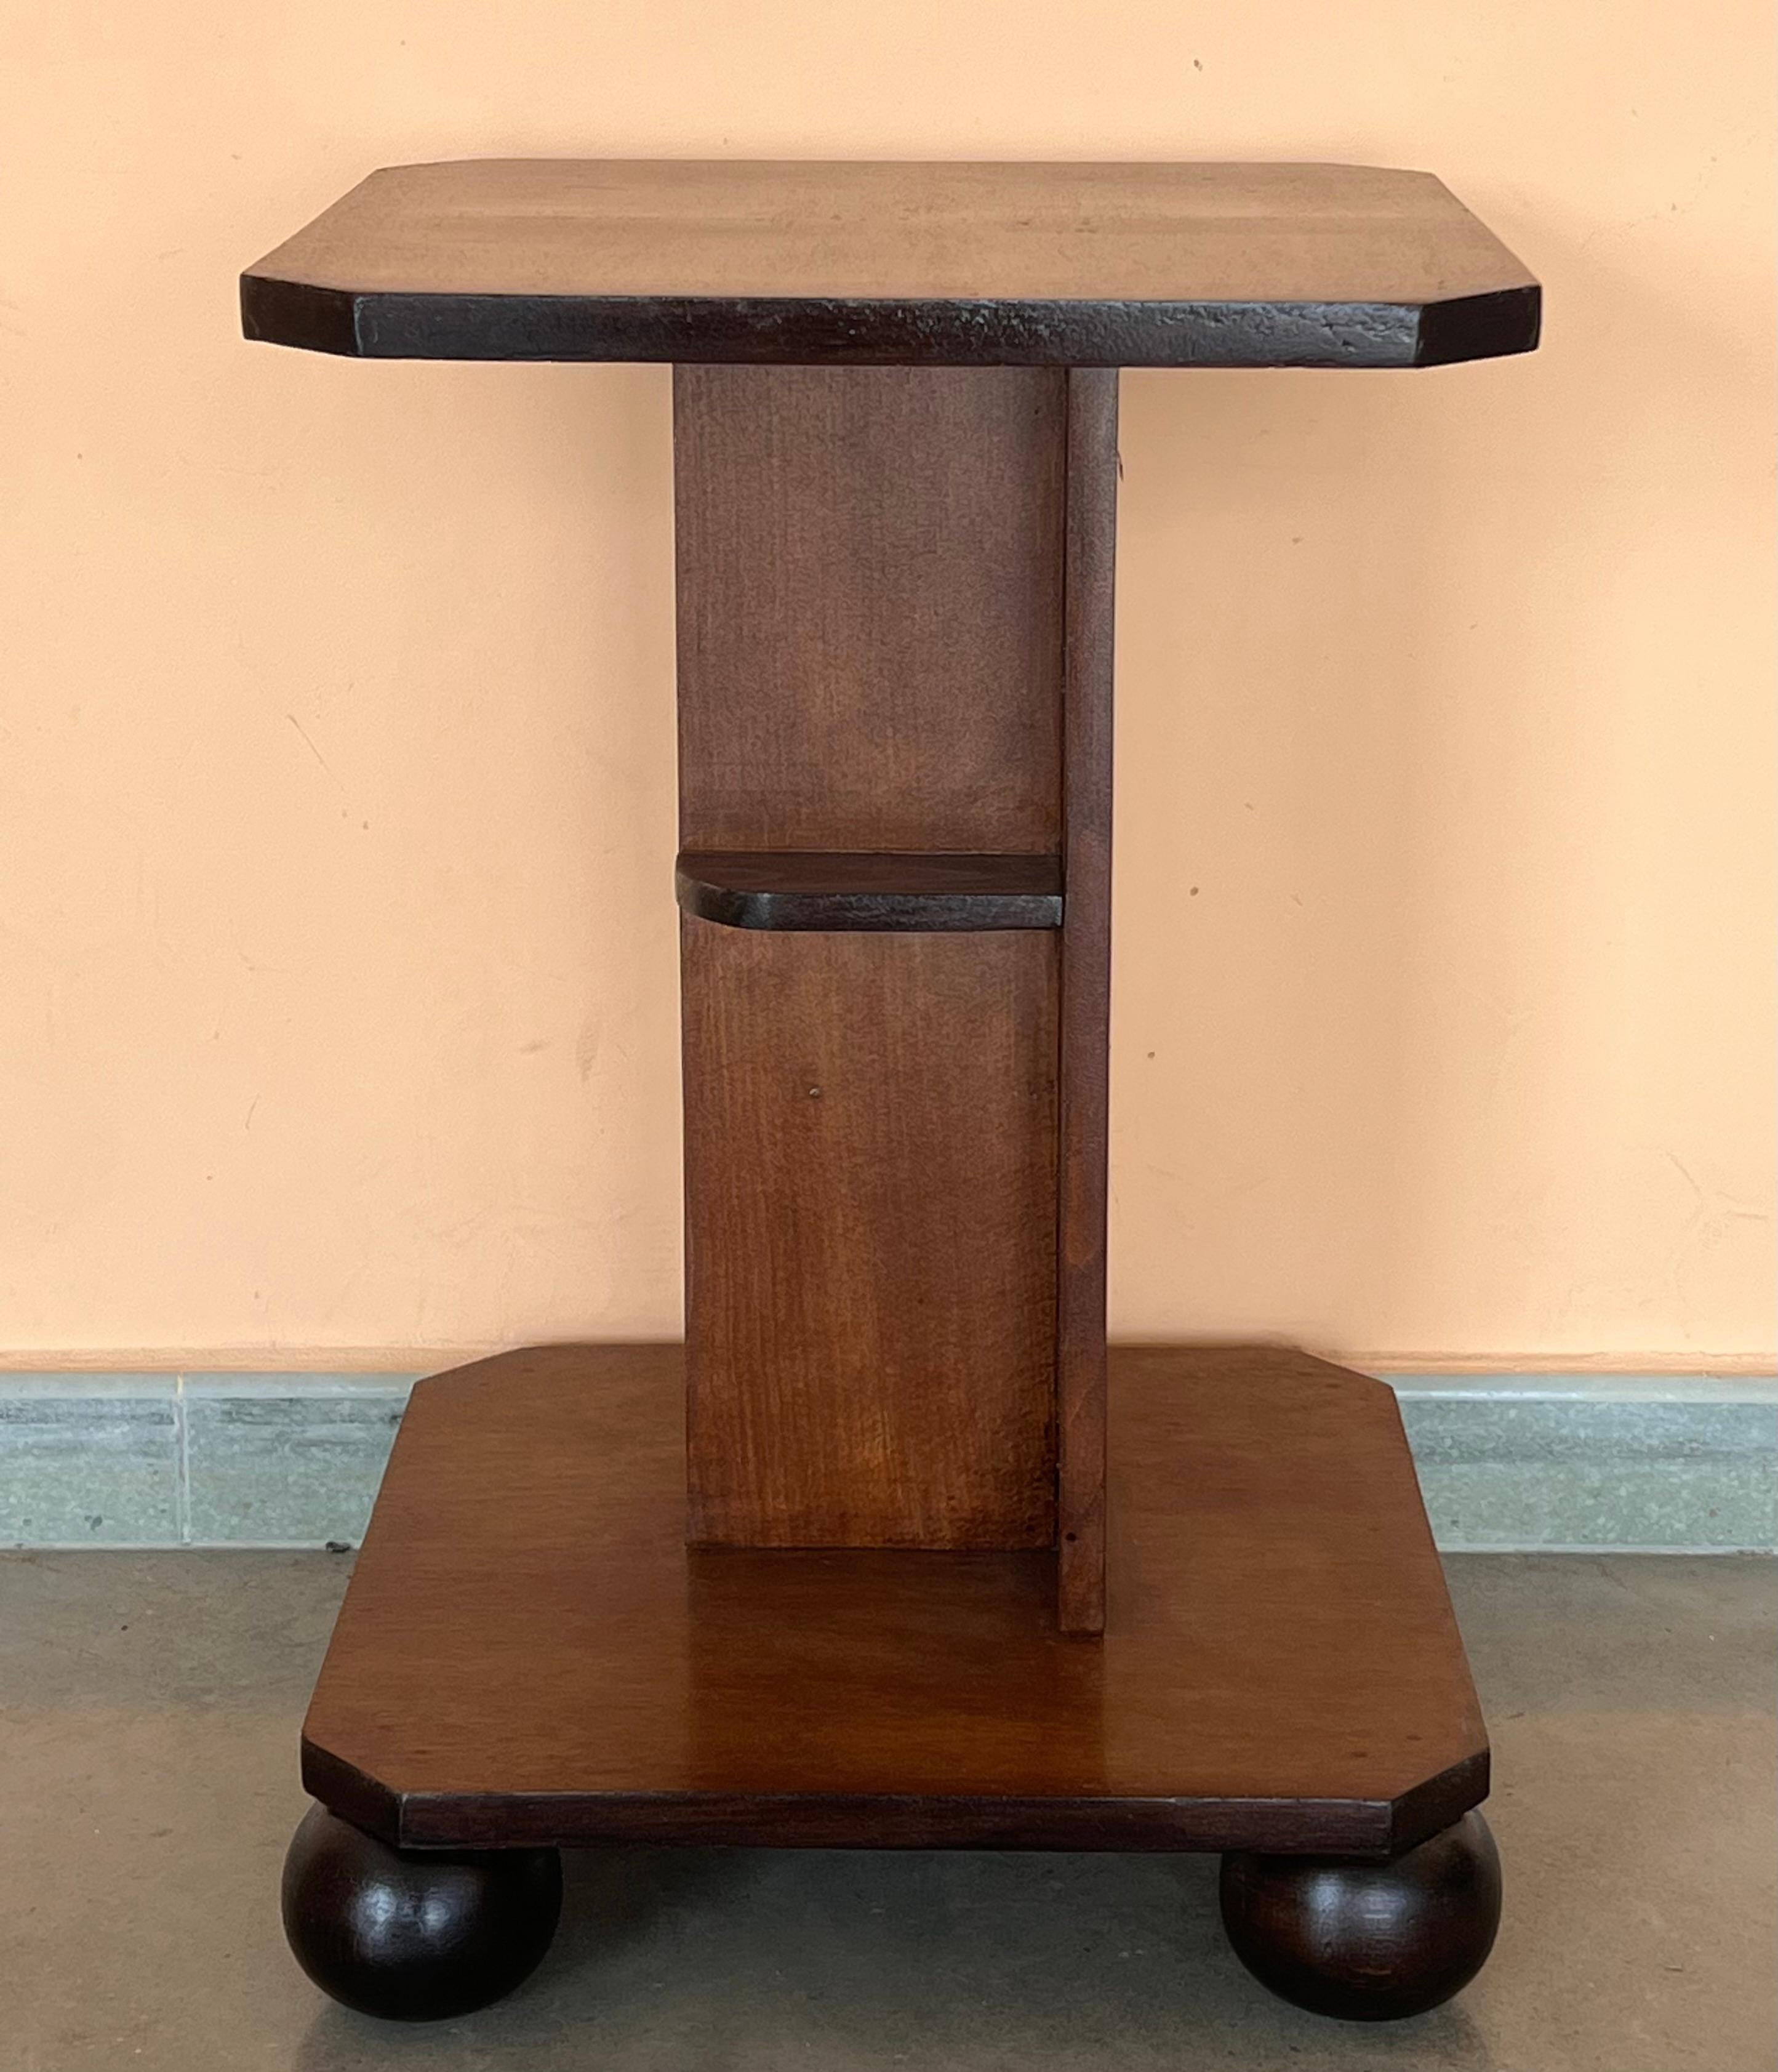 Table d'appoint octogonale Art déco italienne, vers les années 1930. Les pieds ébonisés étroits et le fleuron rond de la base centrale mettent en valeur le noyer figuré. Le niveau inférieur, plus petit, est rond. Fabricant inconnu